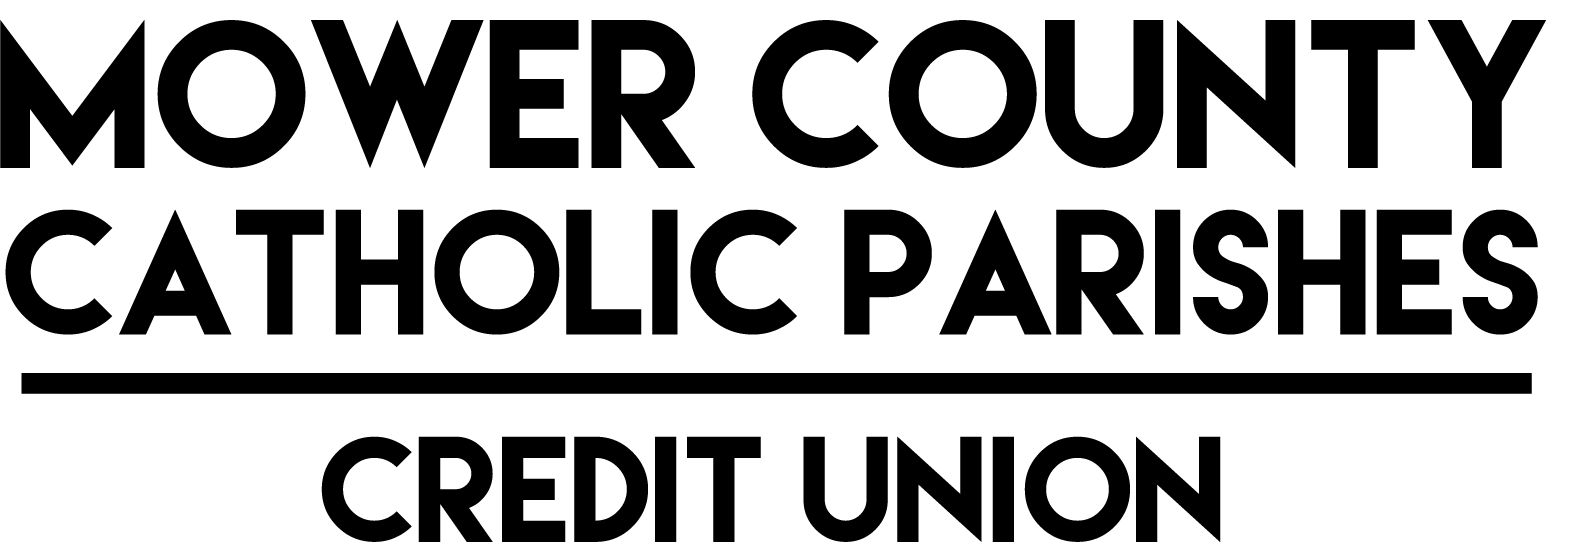 Minnesota Teamsters Credit Union